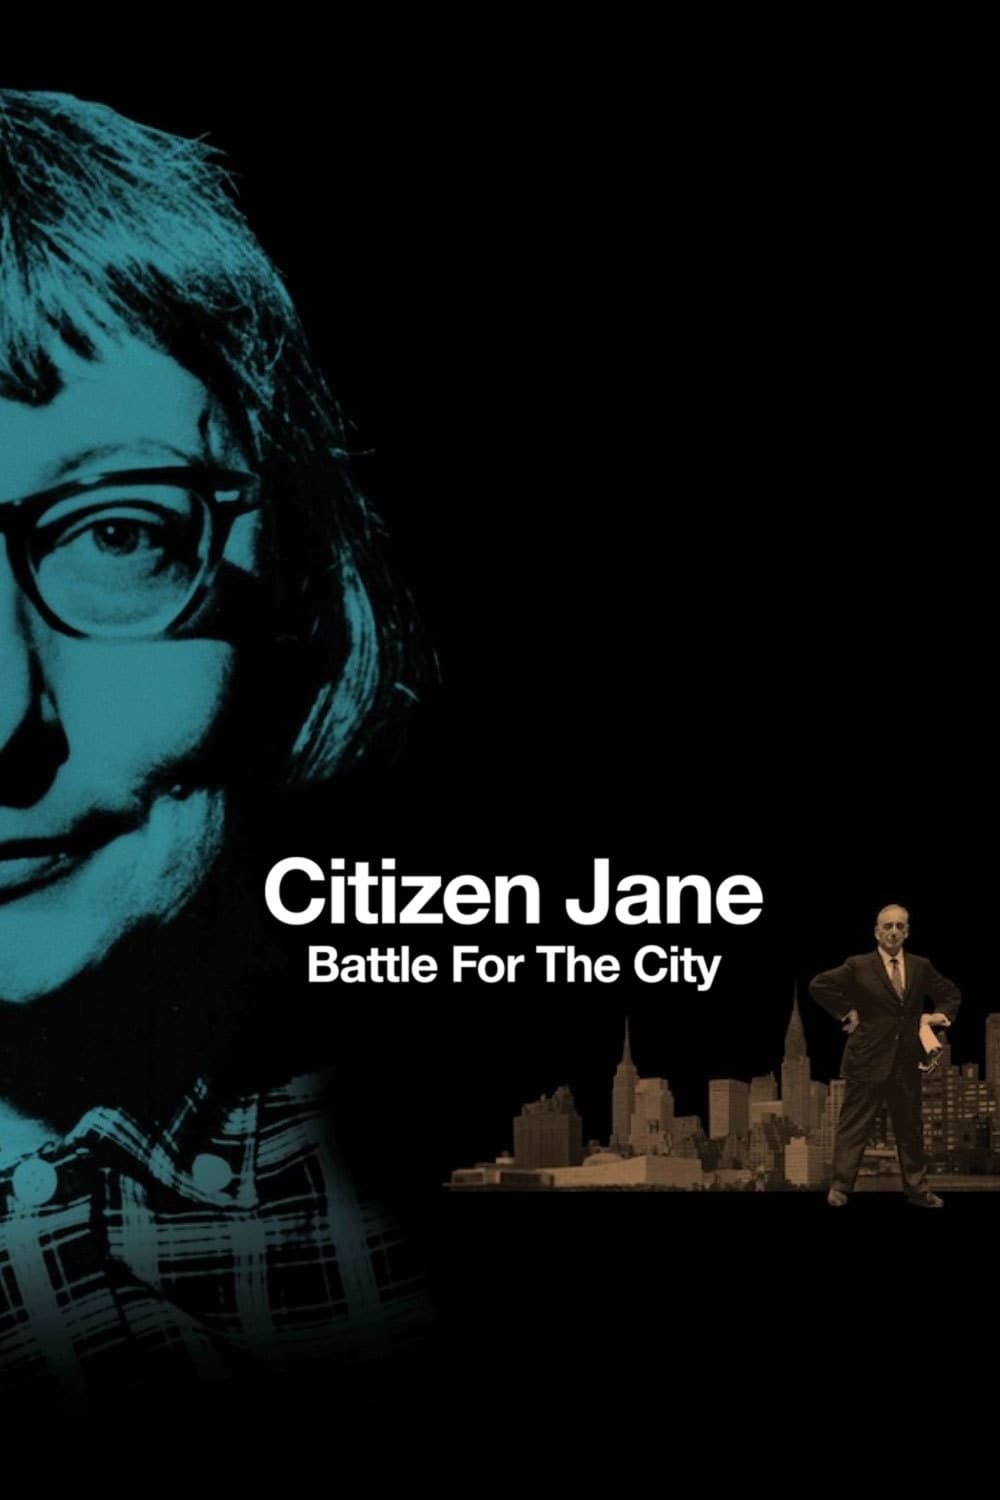 Caratula de CITIZEN JANE: BATTLE FOR THE CITY (Citizen Jane: Battle for the City) 